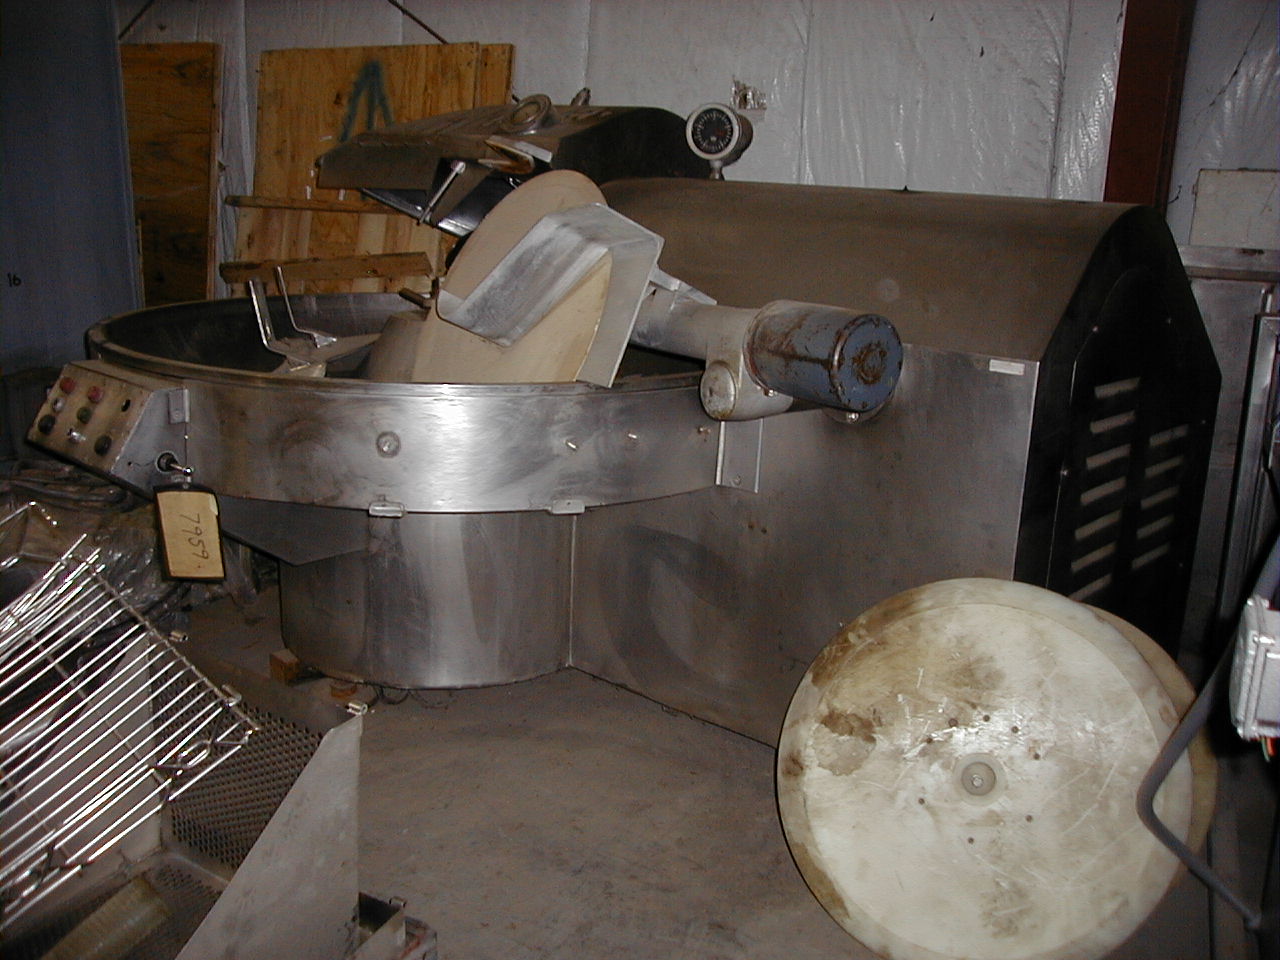 Kramer-Grebe stainless steel bowl cutter